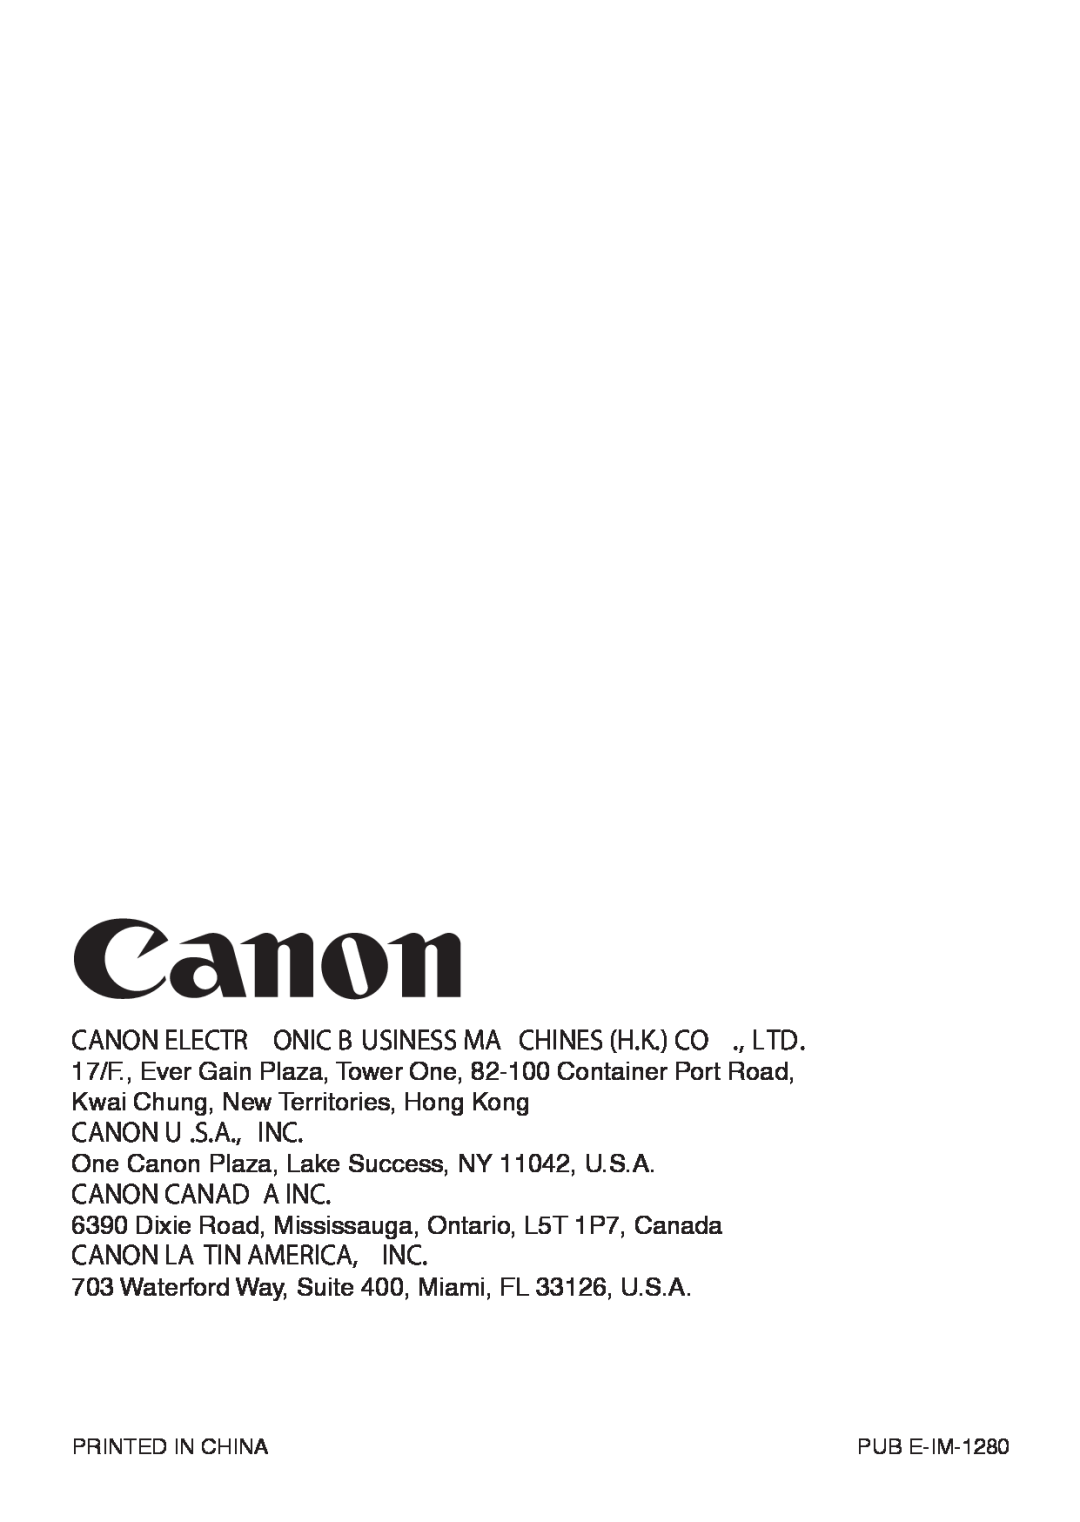 Canon MP41DHII manual Canon U .S.A., Inc, Canon Canad A Inc, Canon La Tin America, Inc, Printed In China, PUB E-IM-1280 